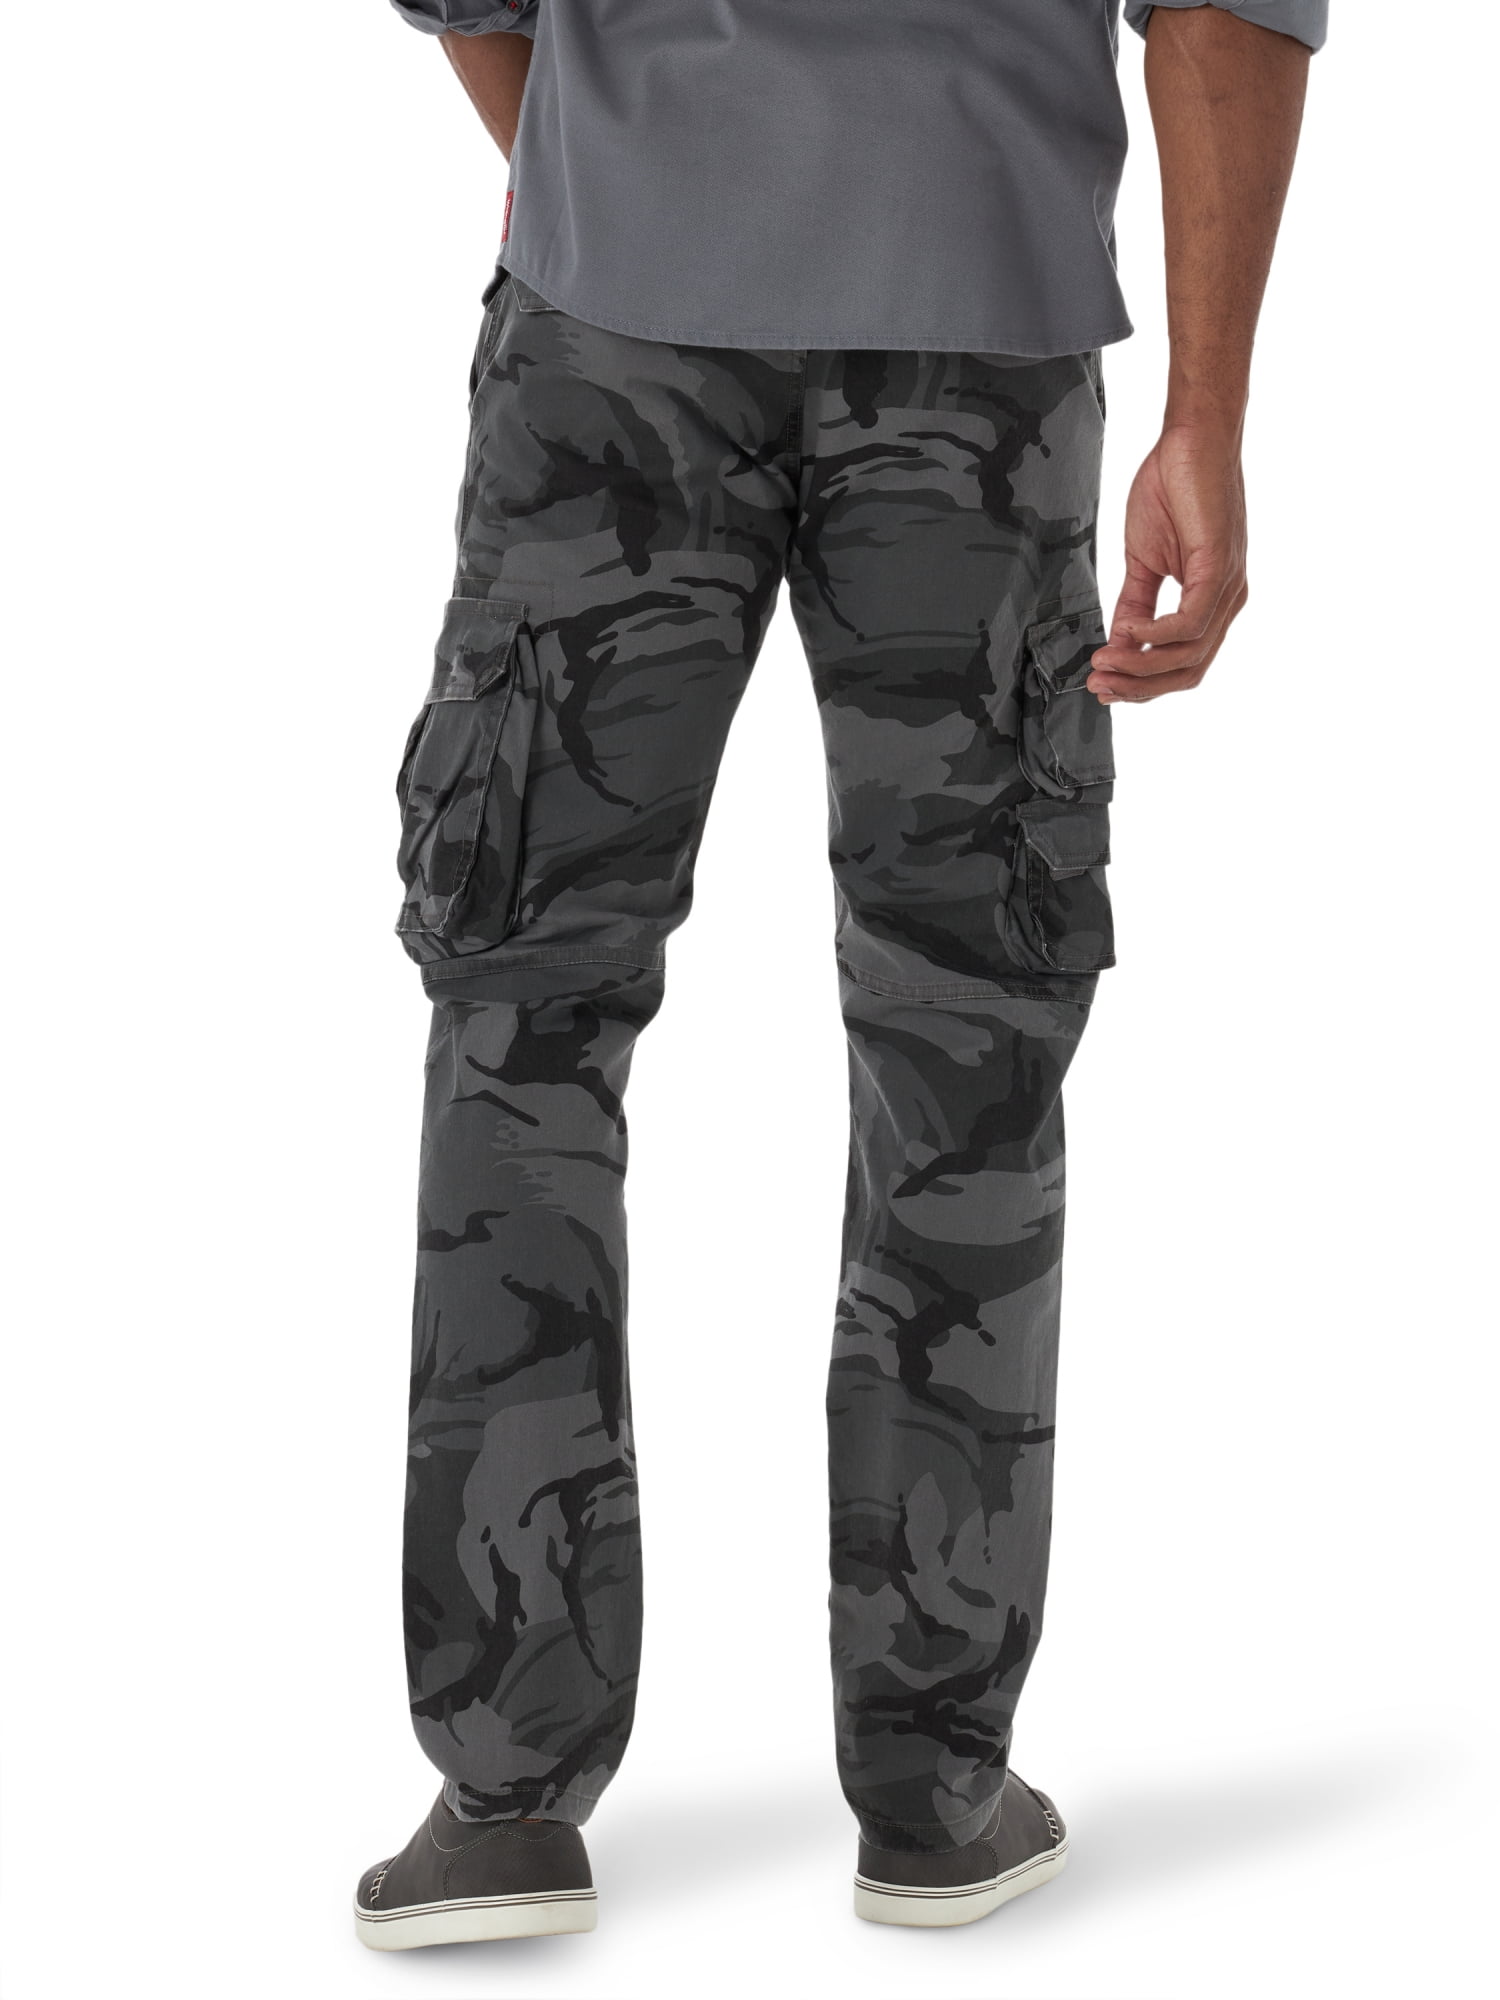 Wrangler Men's Flex Cargo Pants Relaxed Fit Elmwood Khaki w/Tech Pocket  (32x30) : Amazon.com.au: Clothing, Shoes & Accessories